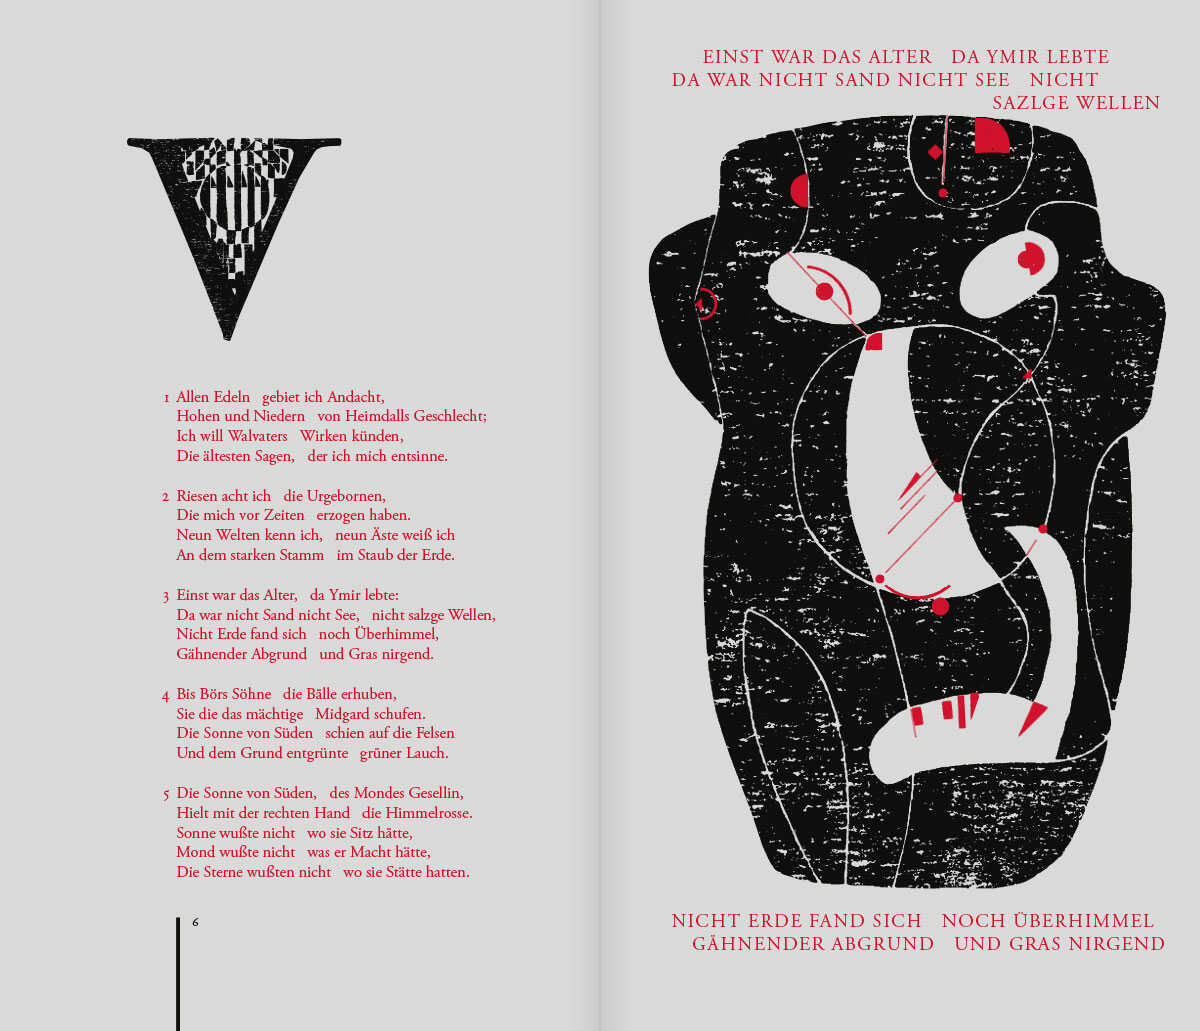 BBuch Völuspa, Die Vision von Anfang und Ende, Seite 6 und 7 mit Illustration